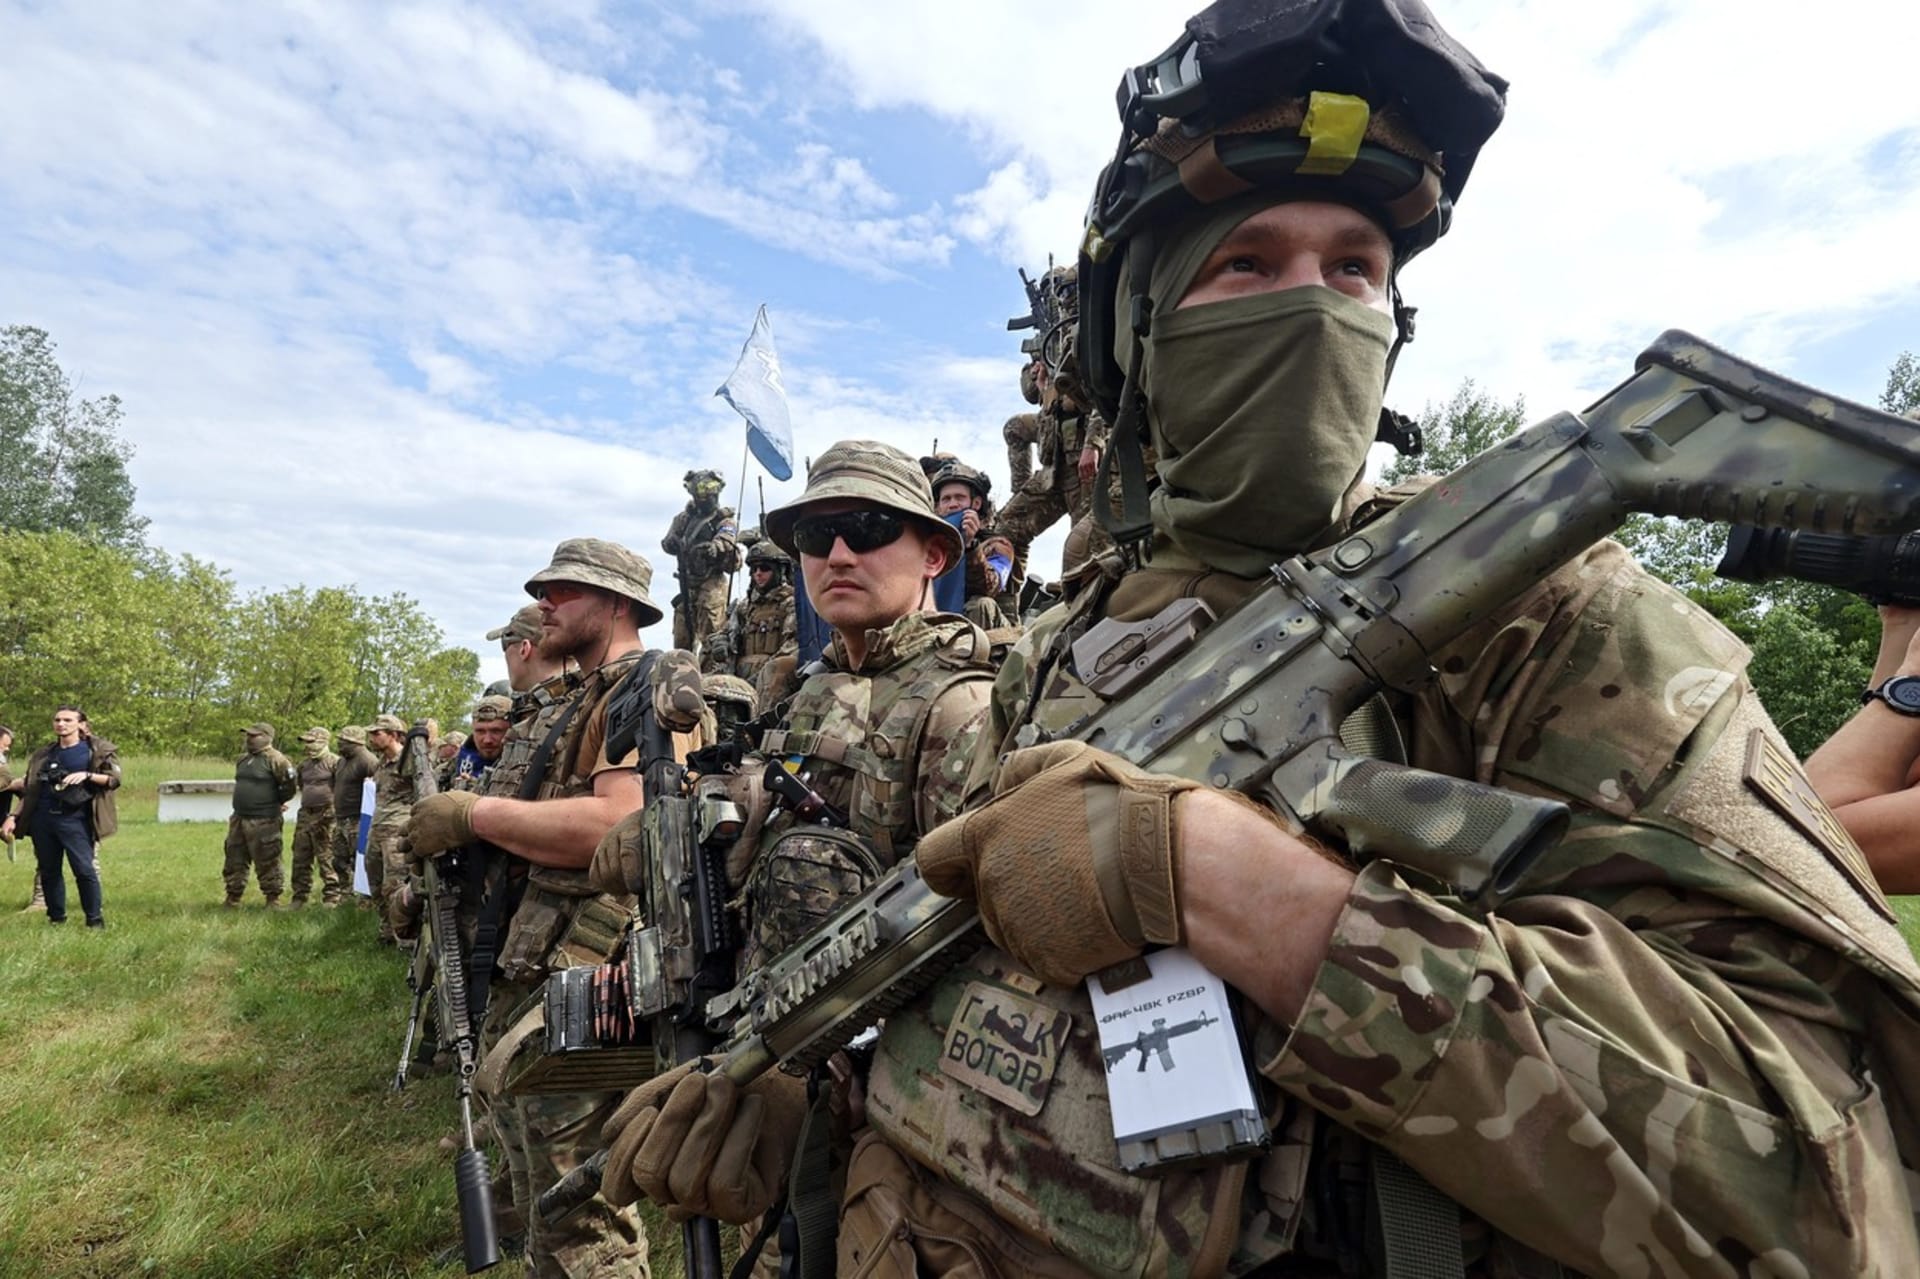 Ozbrojenci z Legie Svobodné Rusko se staví proti vládě prezidenta Vladimira Putina. Bojovali po boku Ukrajinců a nyní se pokoušejí o partyzánské akce přímo uvnitř Ruska.